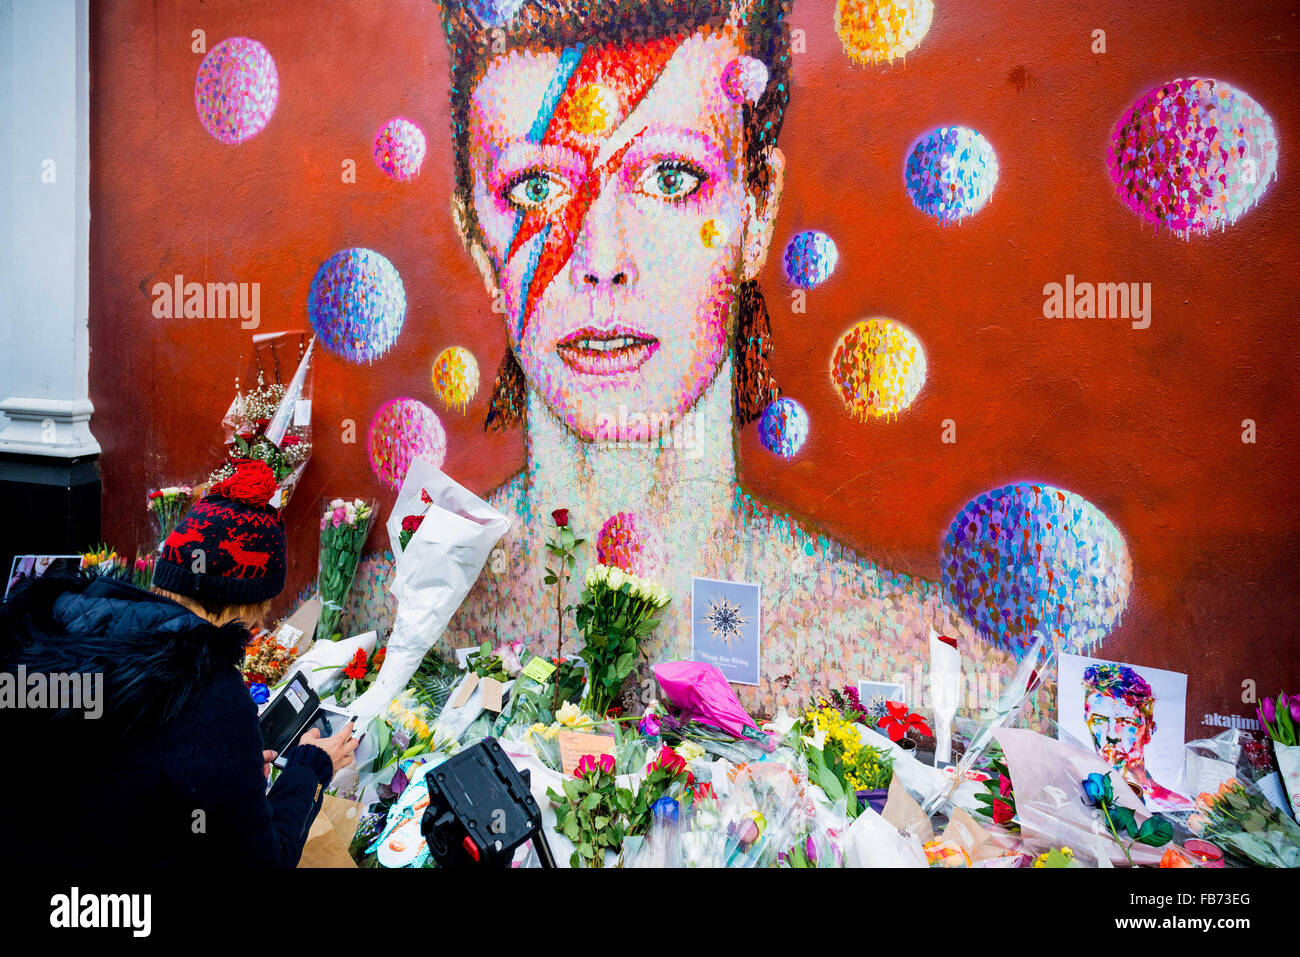 El 11 de enero, 2016 - Londres, Reino Unido - londinenses rindiendo homenaje a David Bowie en un mural a la estrella en Brixton, donde creció. Bowie muere hoy de cáncer a la edad de 69 años. (Crédito de la Imagen: © Velar Subvención a través de Zuma Wire) Foto de stock